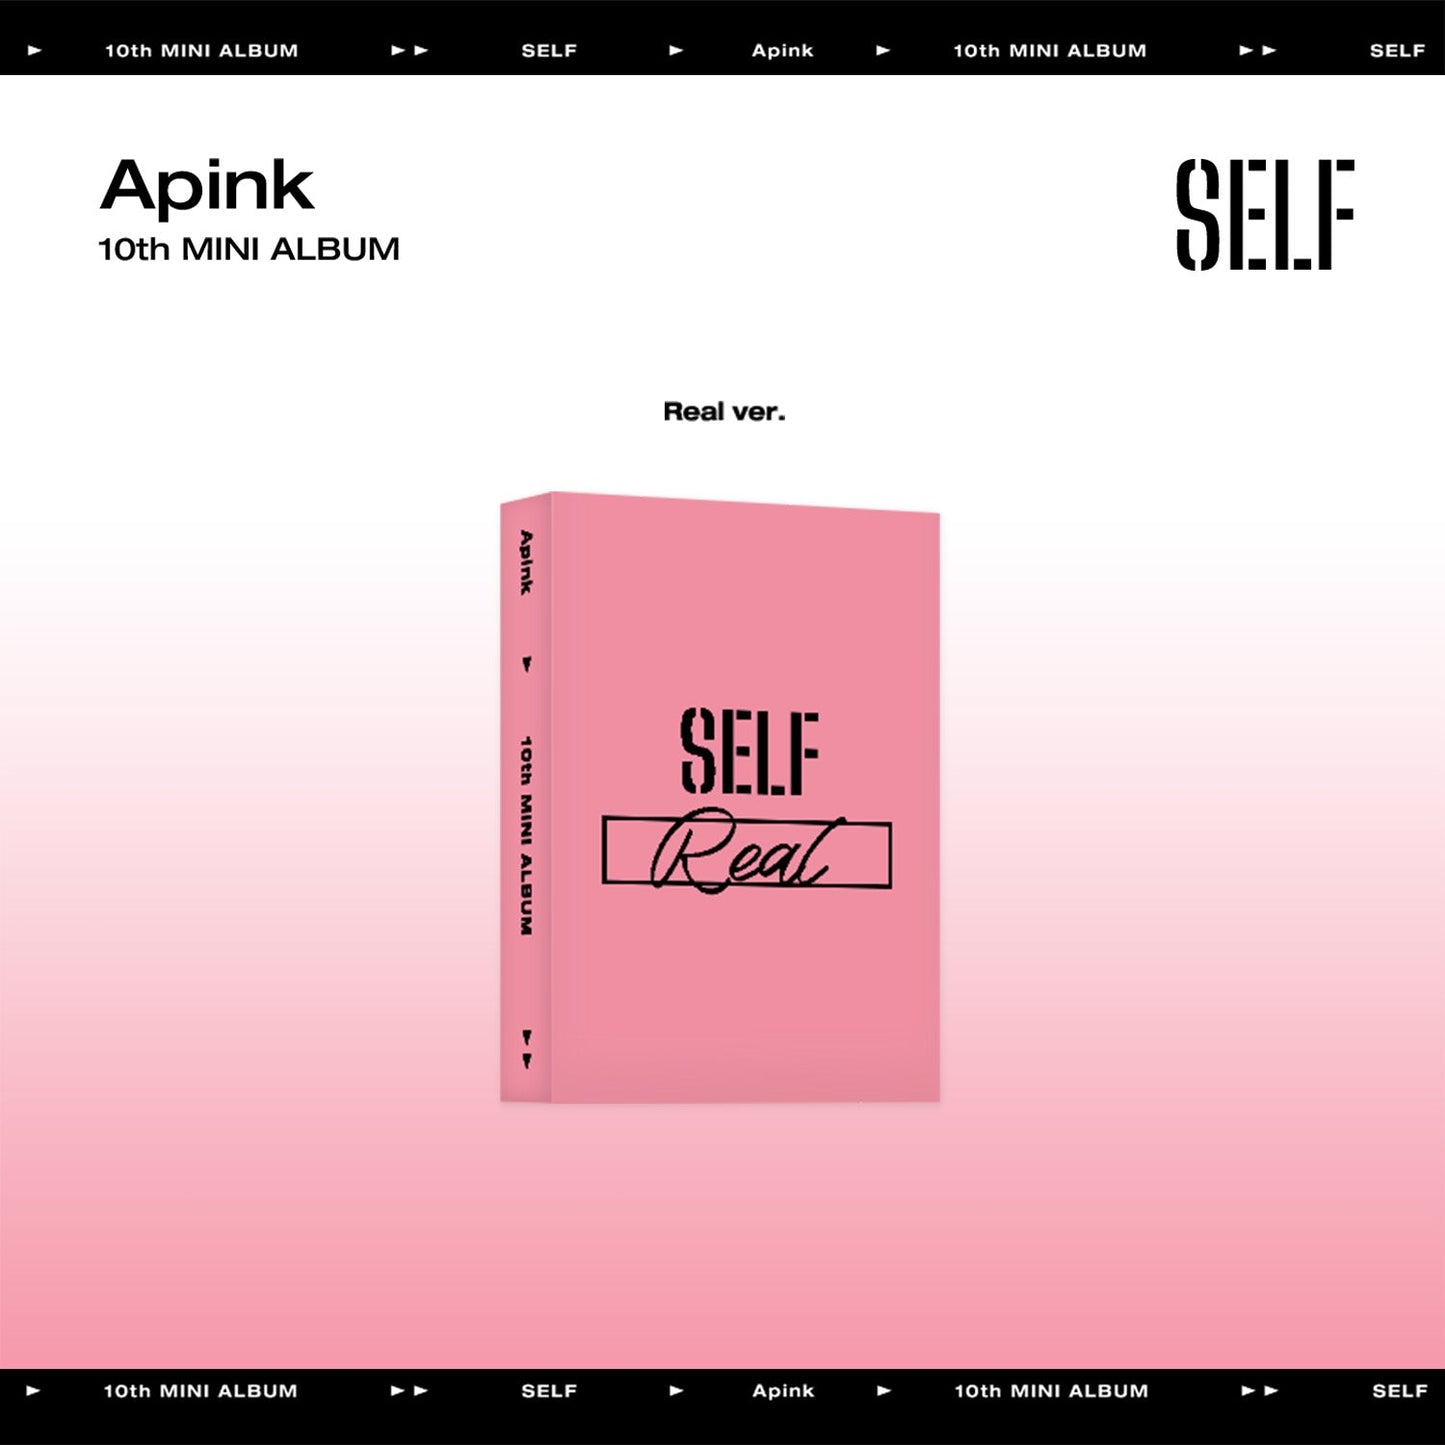 APINK 10TH MINI ALBUM 'SELF' (META) REAL VERSION COVER